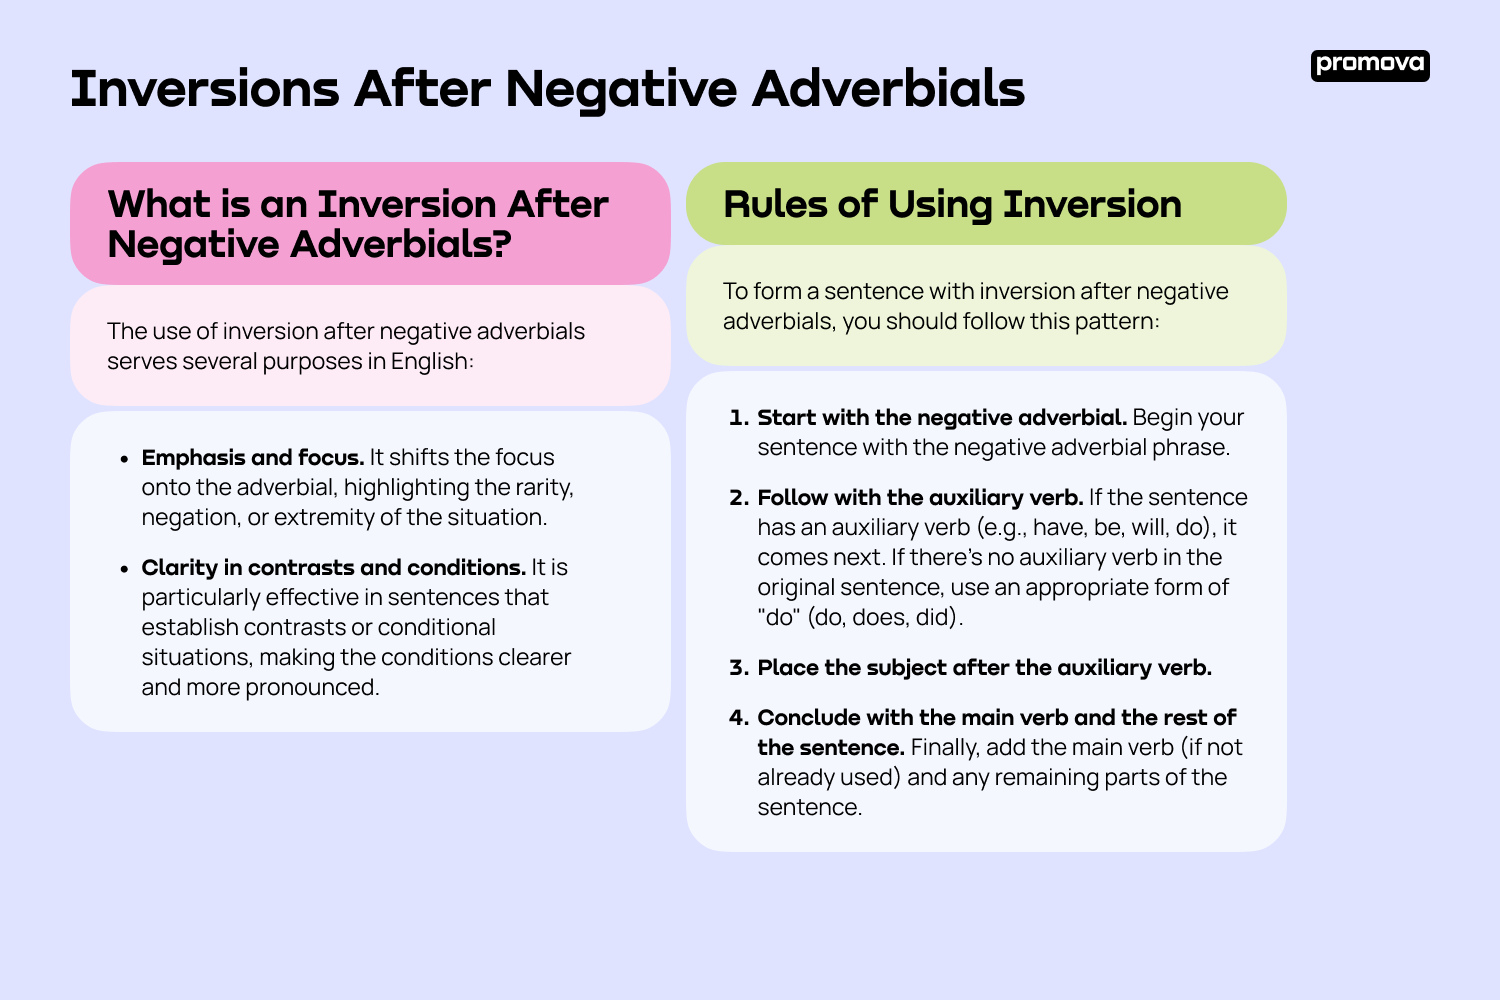 Exploring Inversions After Negative Adverbials